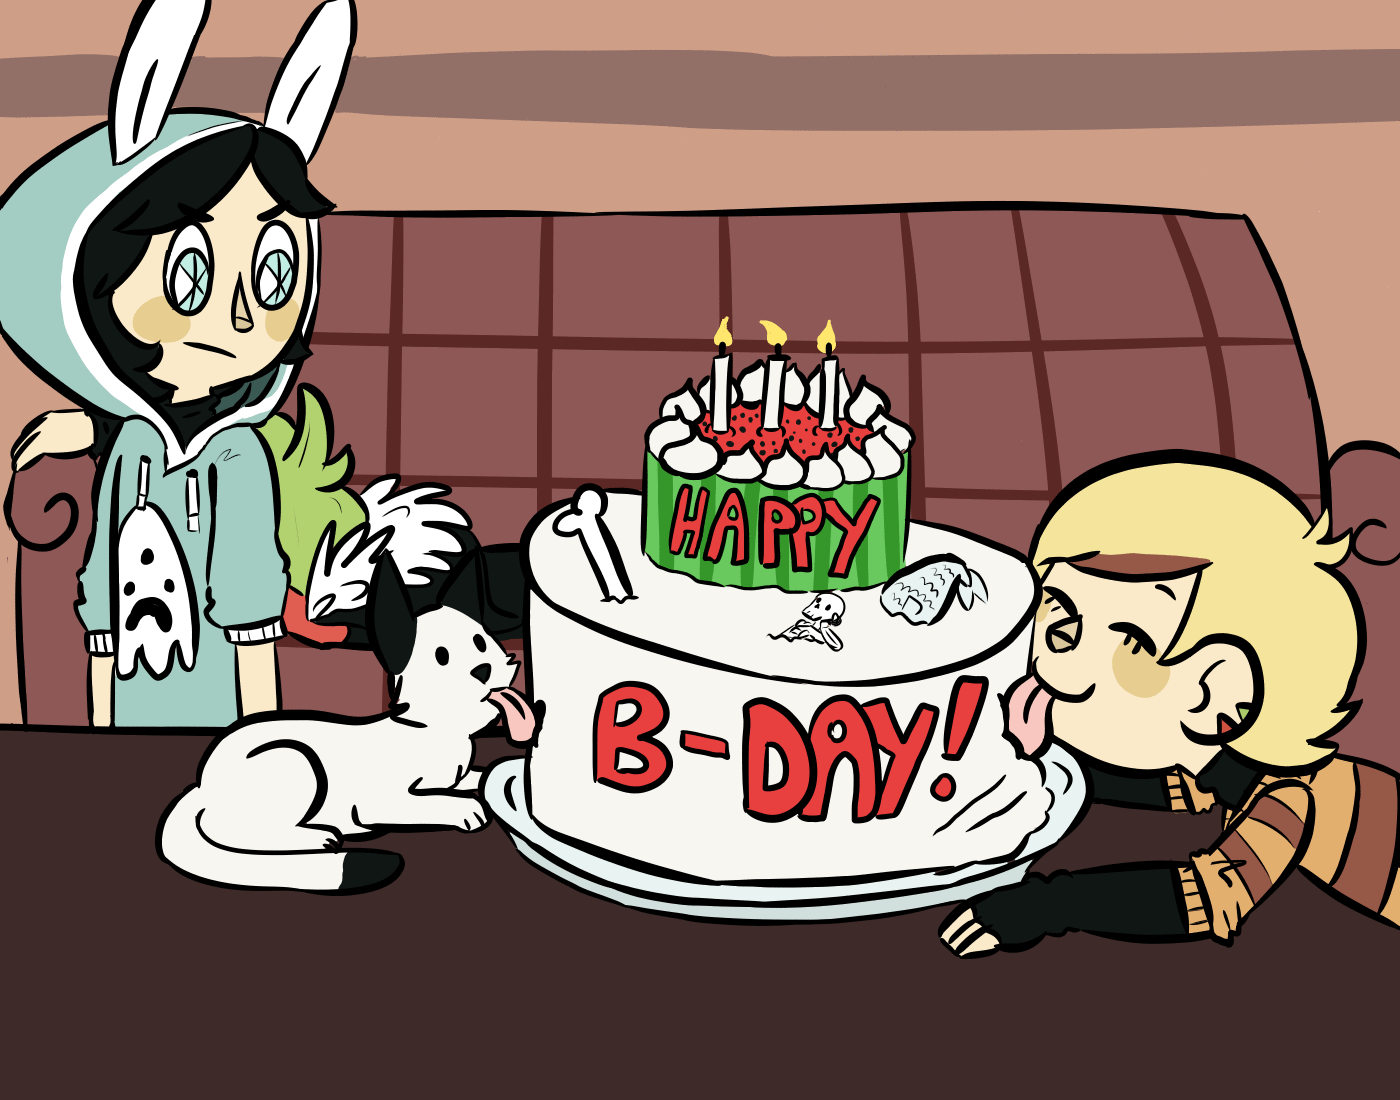 Chúc mừng sinh nhật liếm bánh hoạt hình